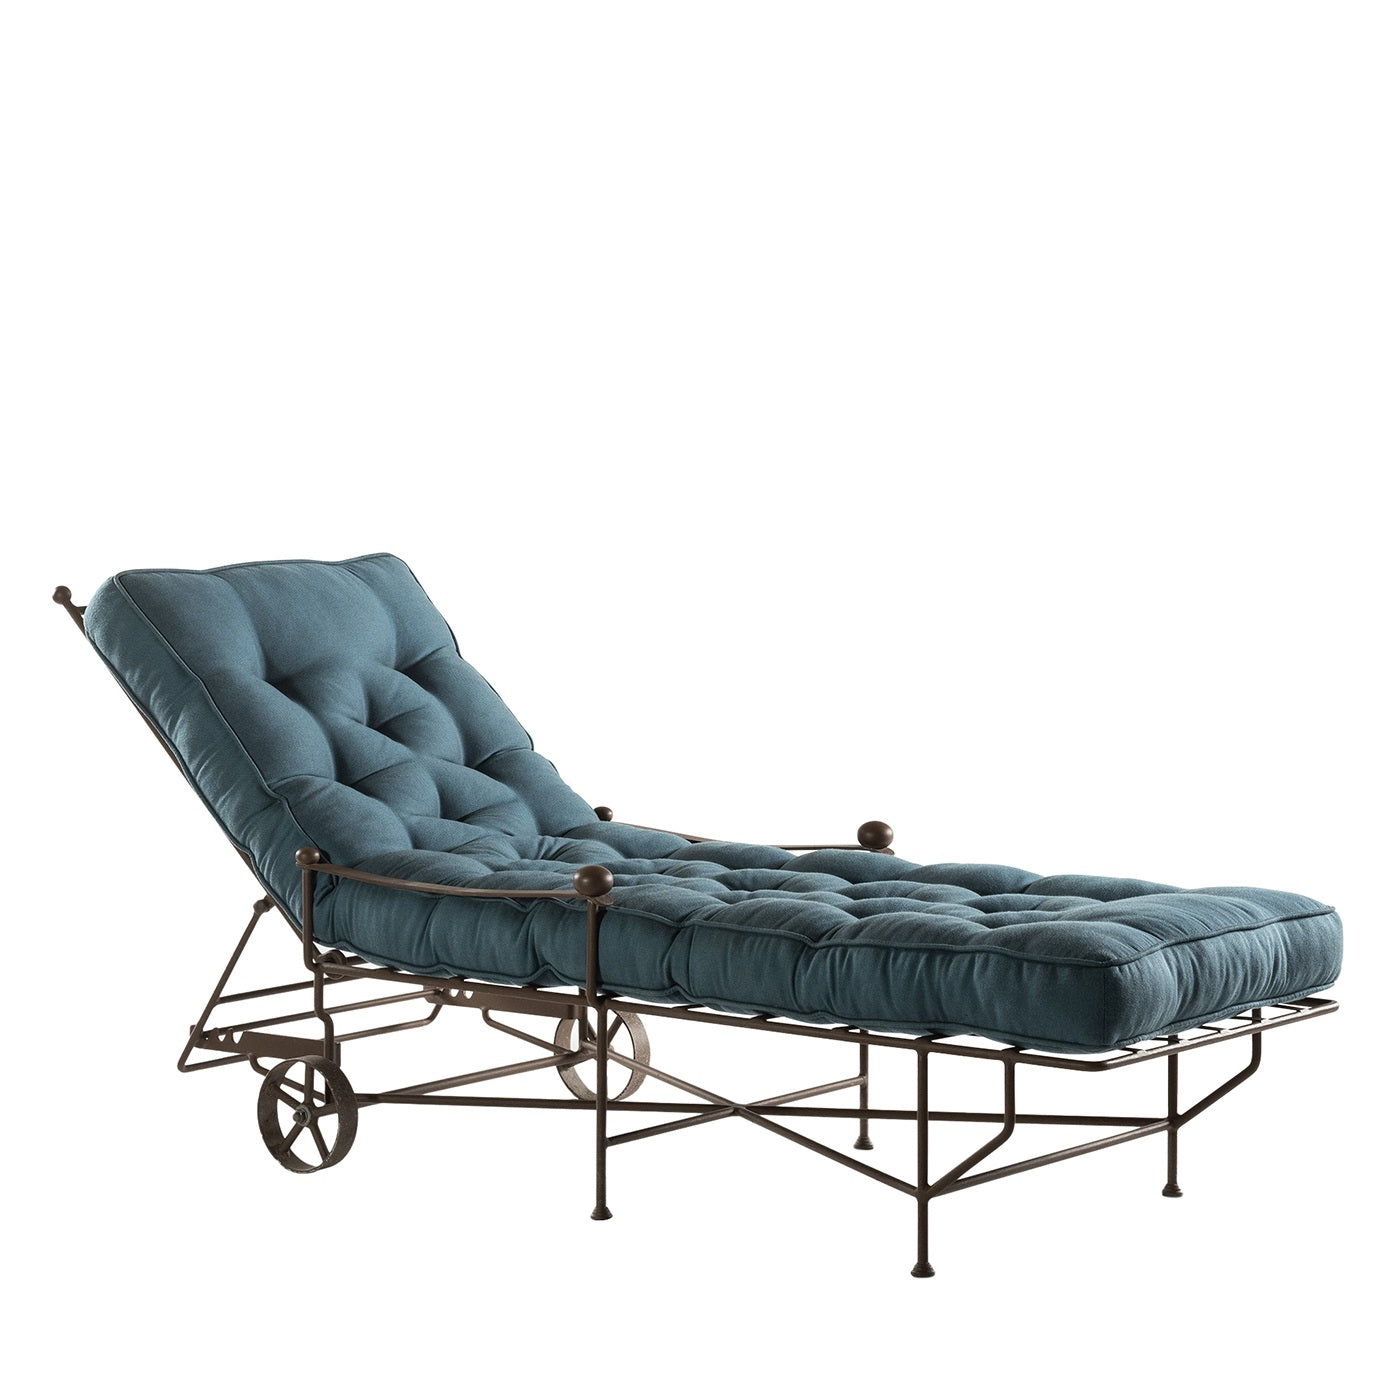 Chaise longue clásica Garden azul - Vista principal